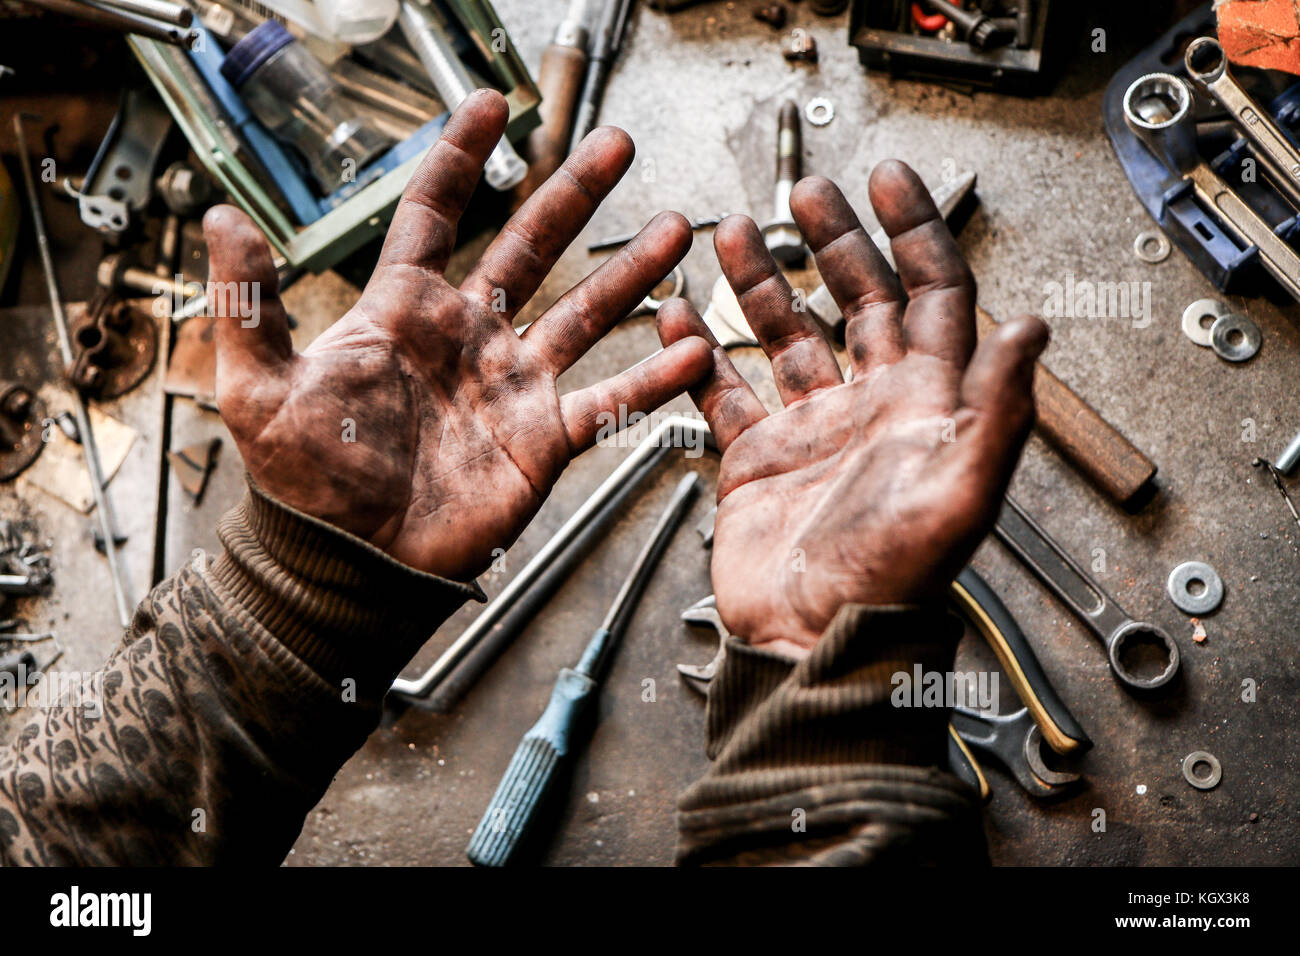 Une image des mains sales d'un gars du garage. Il est derrière lui un travail dur et sale. Banque D'Images